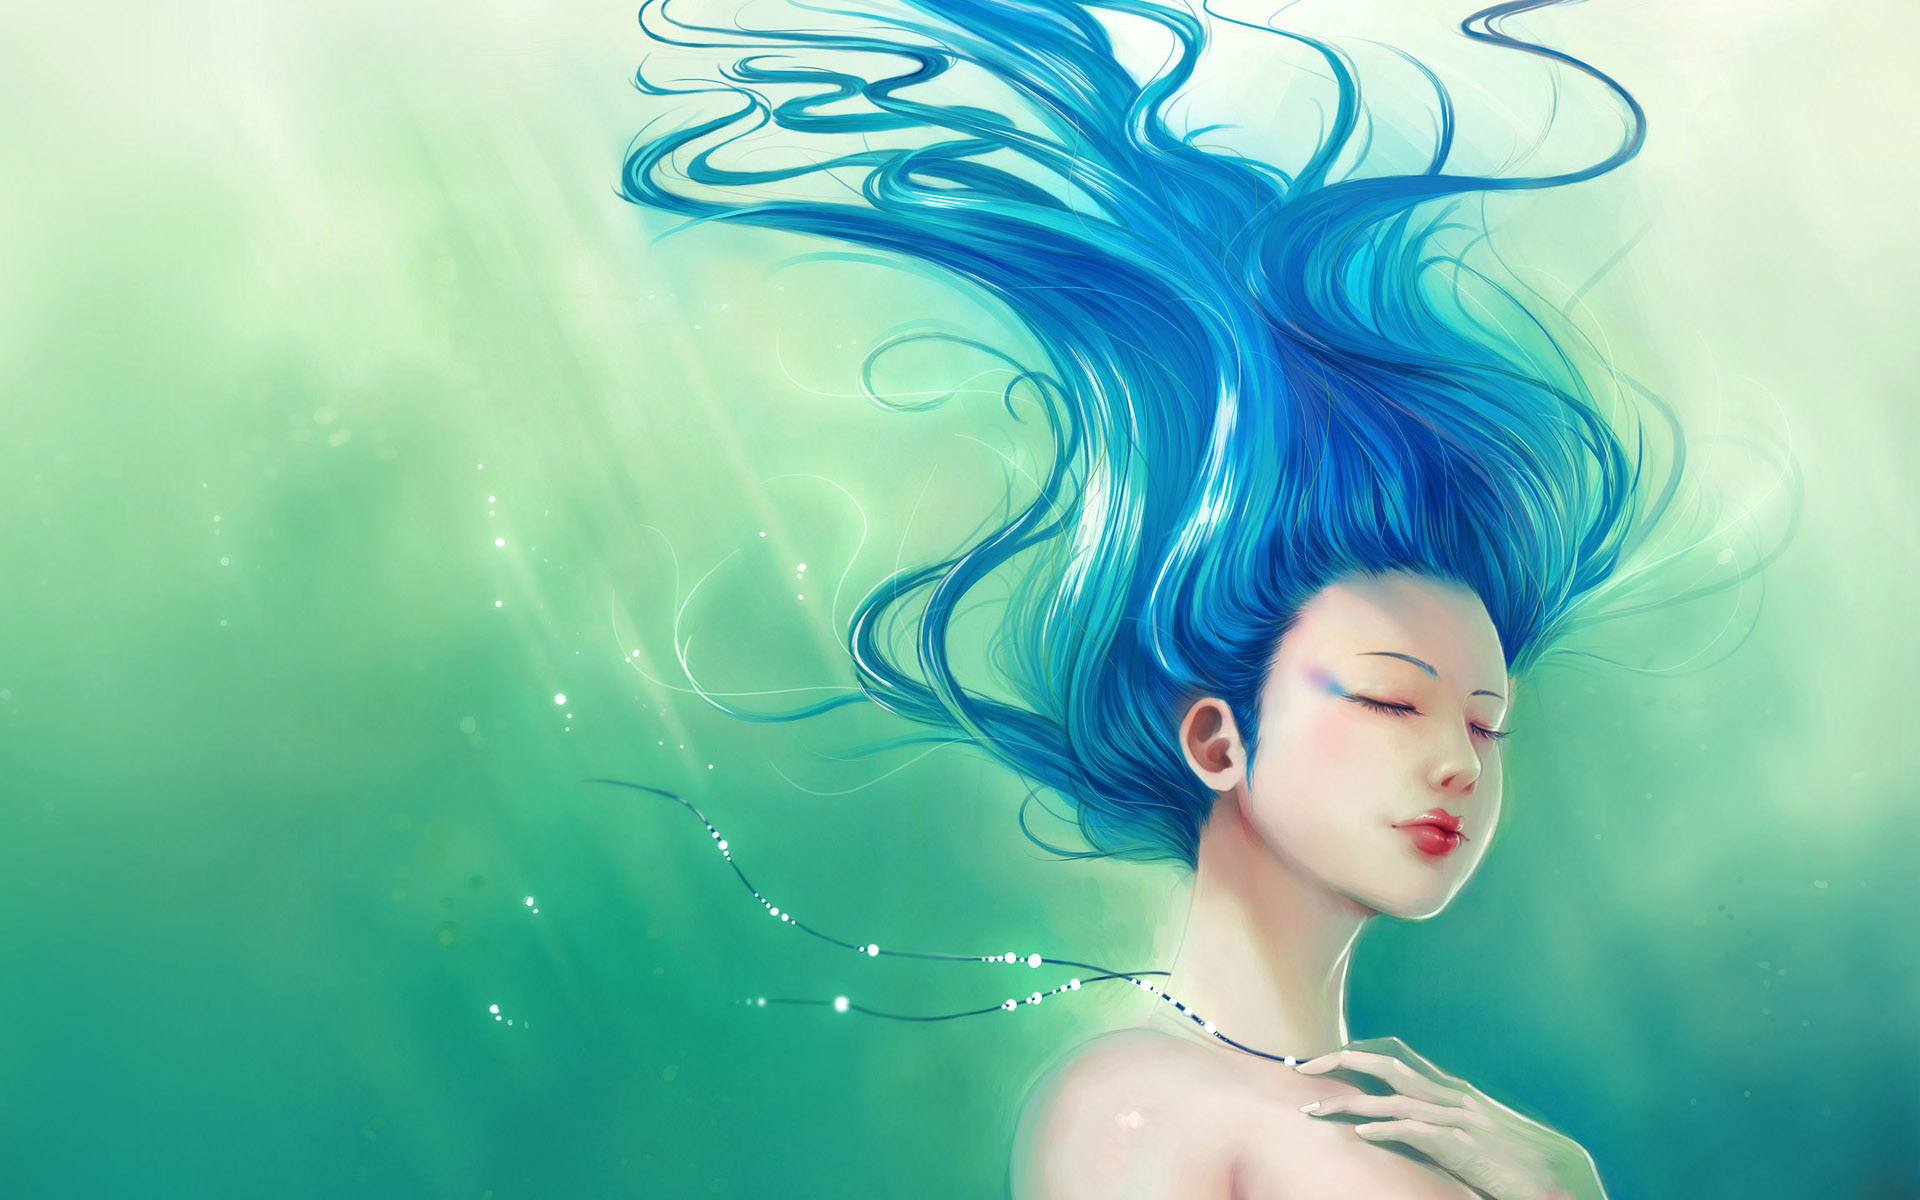 Hair Underwater Drawing - HD Wallpaper 